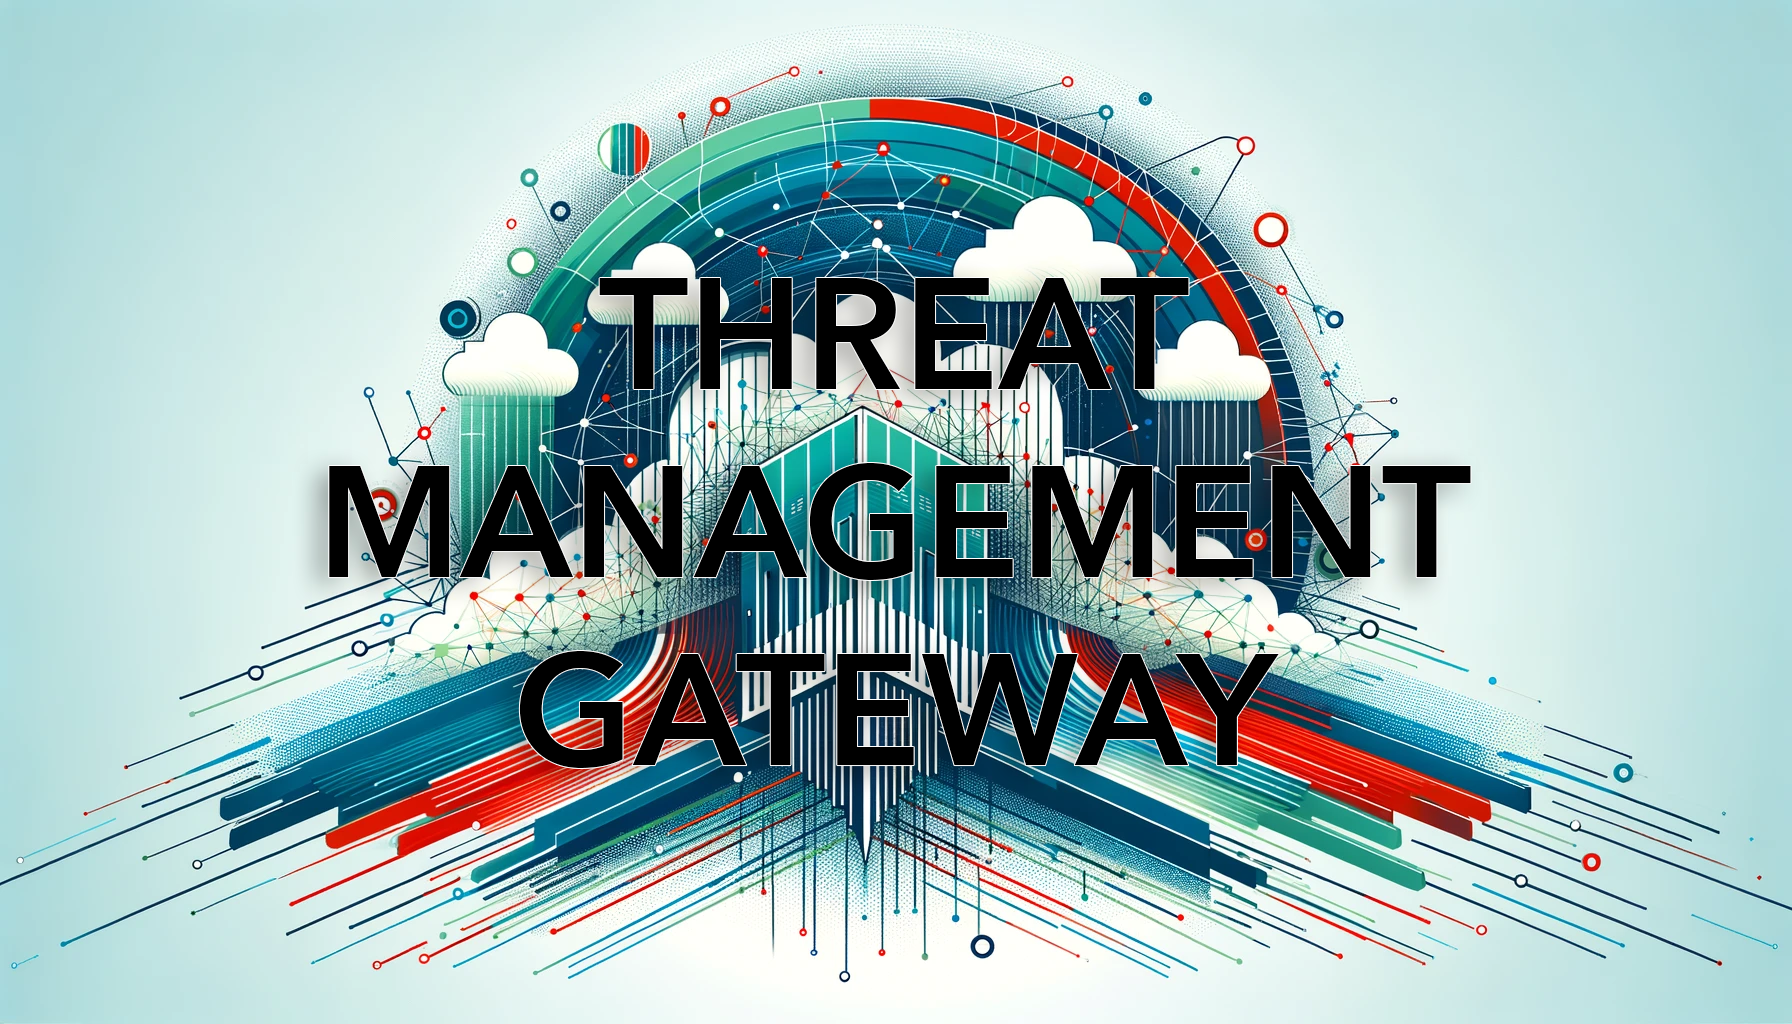 Threat Management Gateway